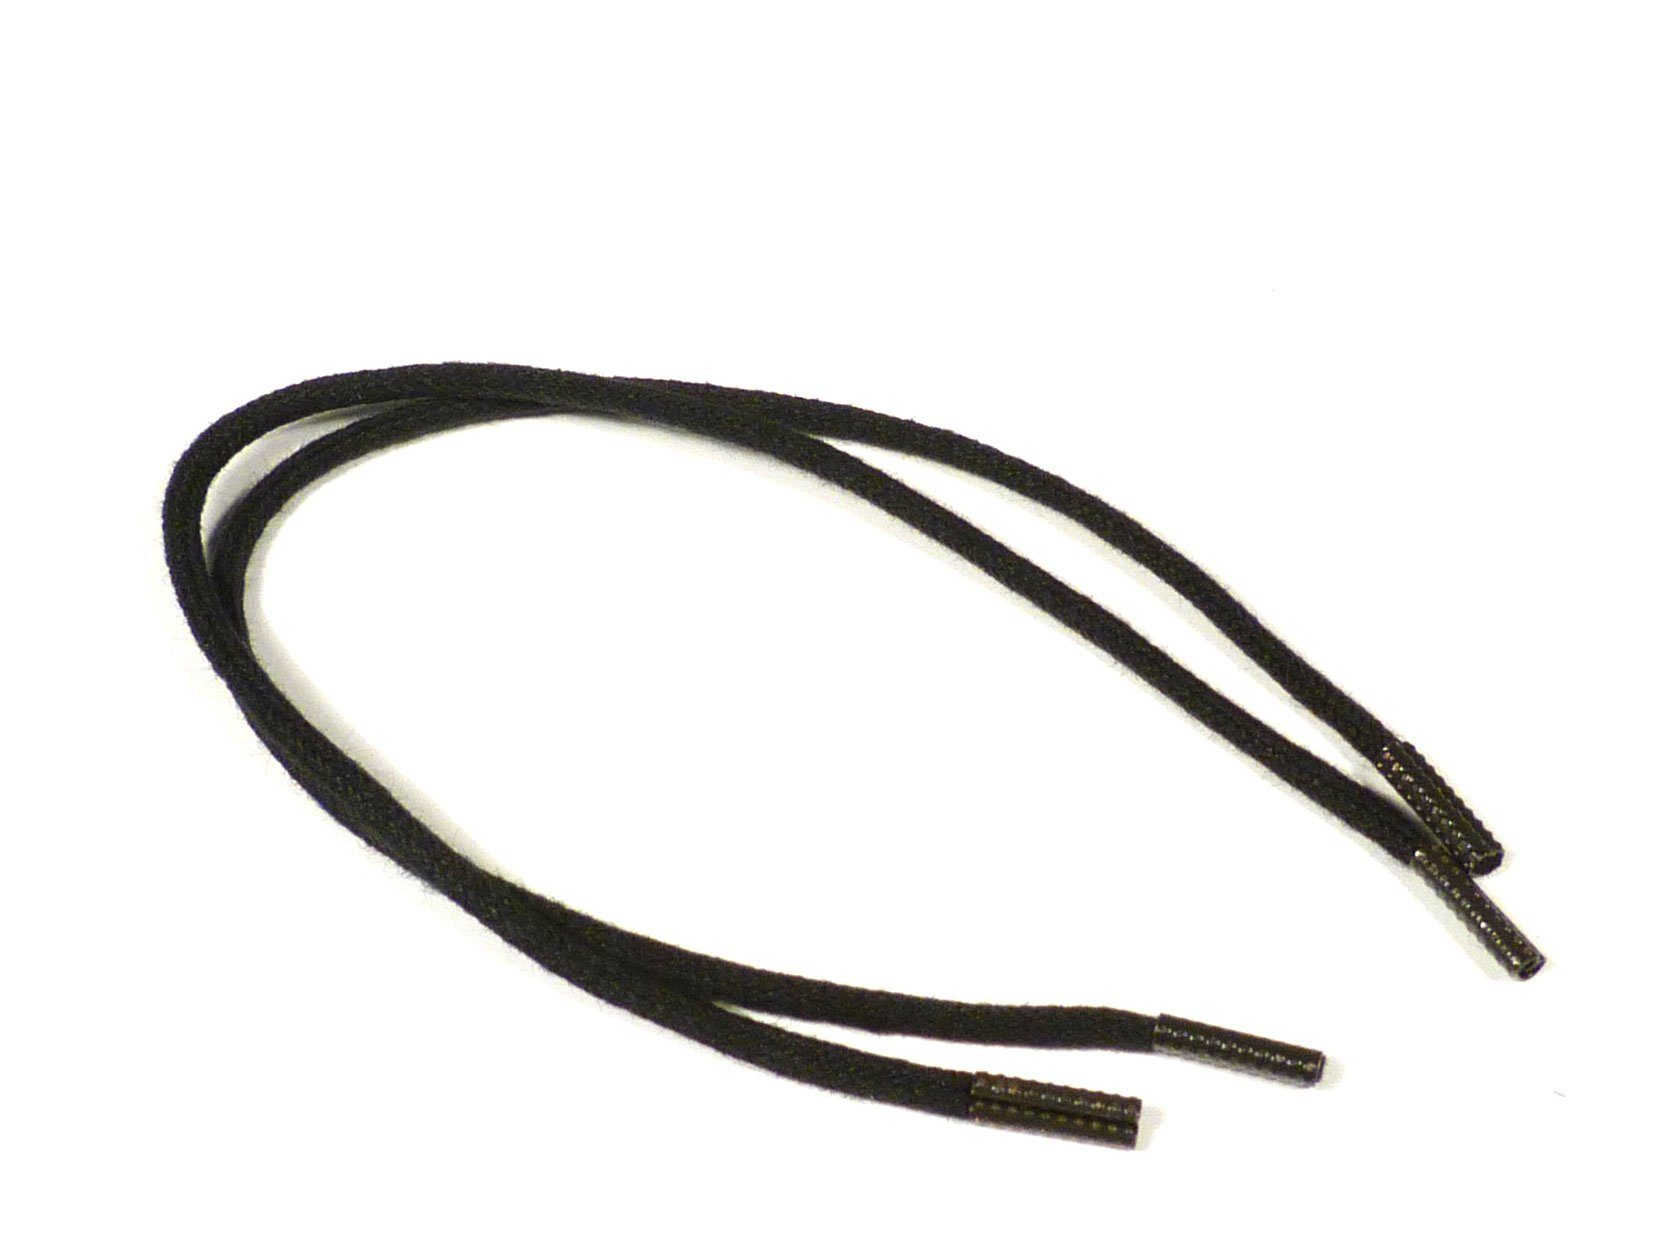 Rema Schnürsenkel Rema Schnürsenkel Schwarz - rund - ca. 2,5 mm dünn für Sie nach Wunschlänge geschnitten und mit Metallenden versehen